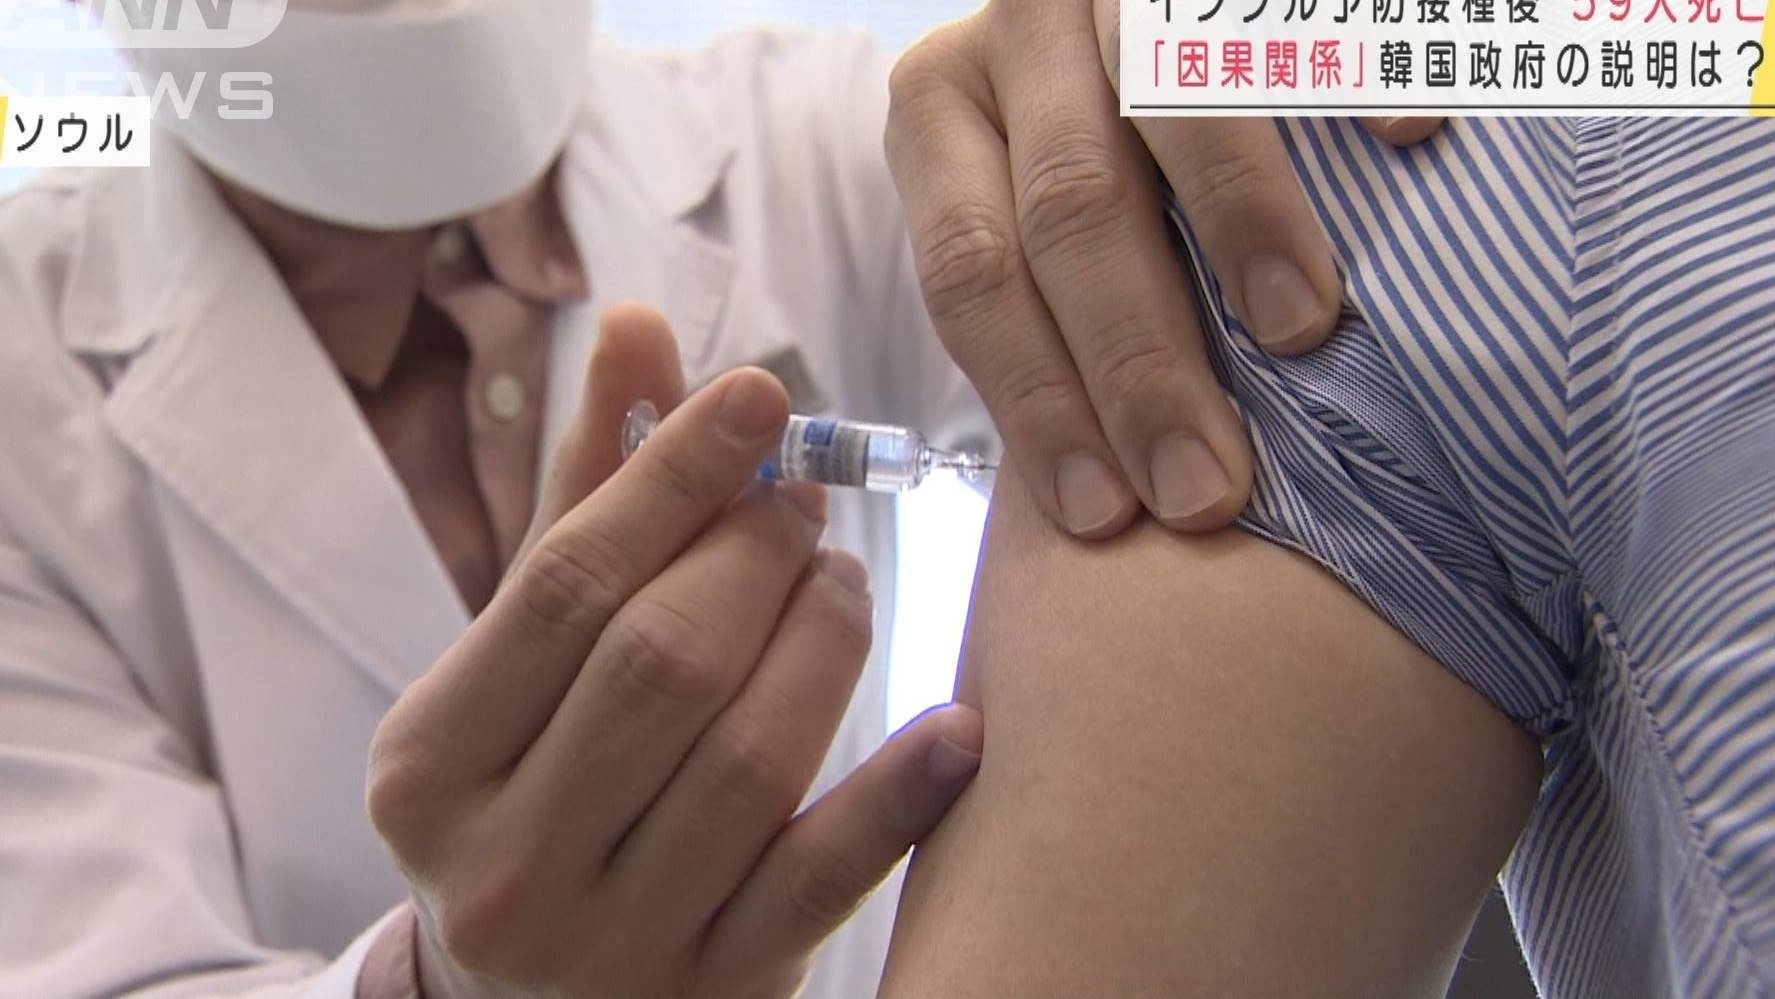 韓国でインフルエンザワクチンの接種後に死亡した少年